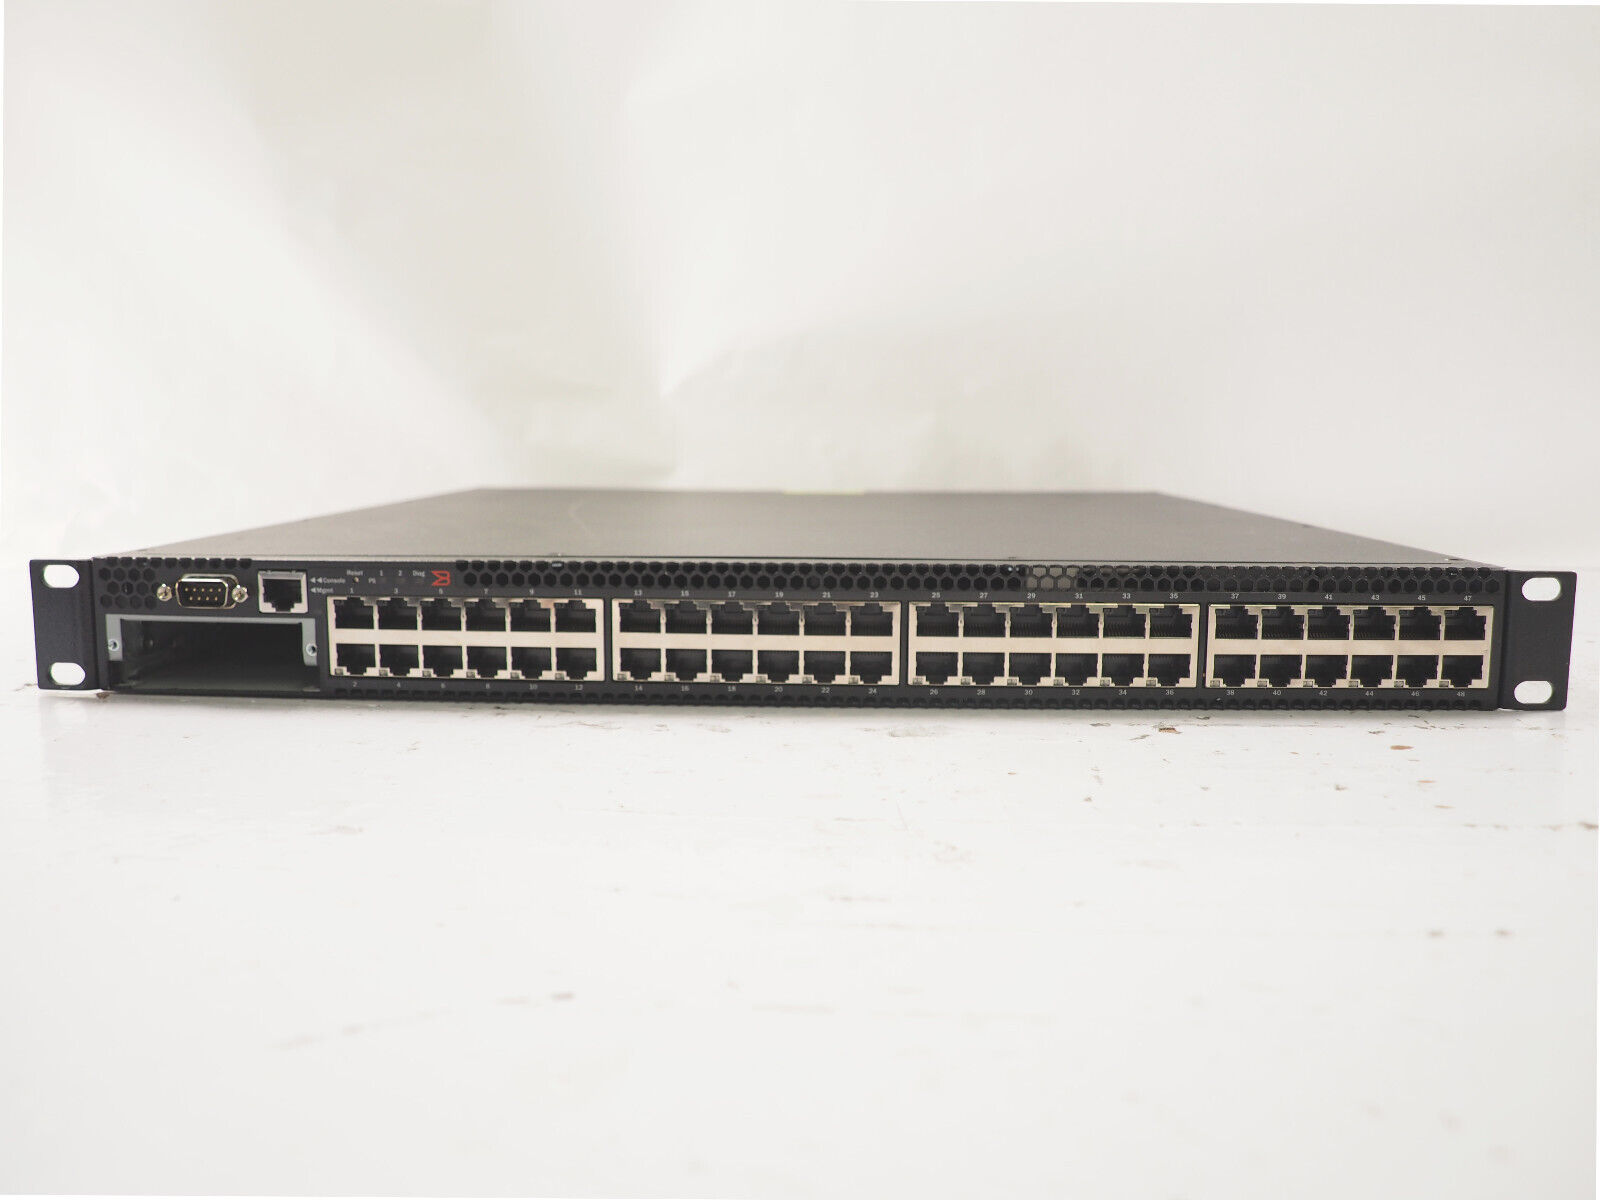 Brocade FCX648-I 80-1003606-06 48 Port Gigabit PoE Network Switch, 1 X PSU